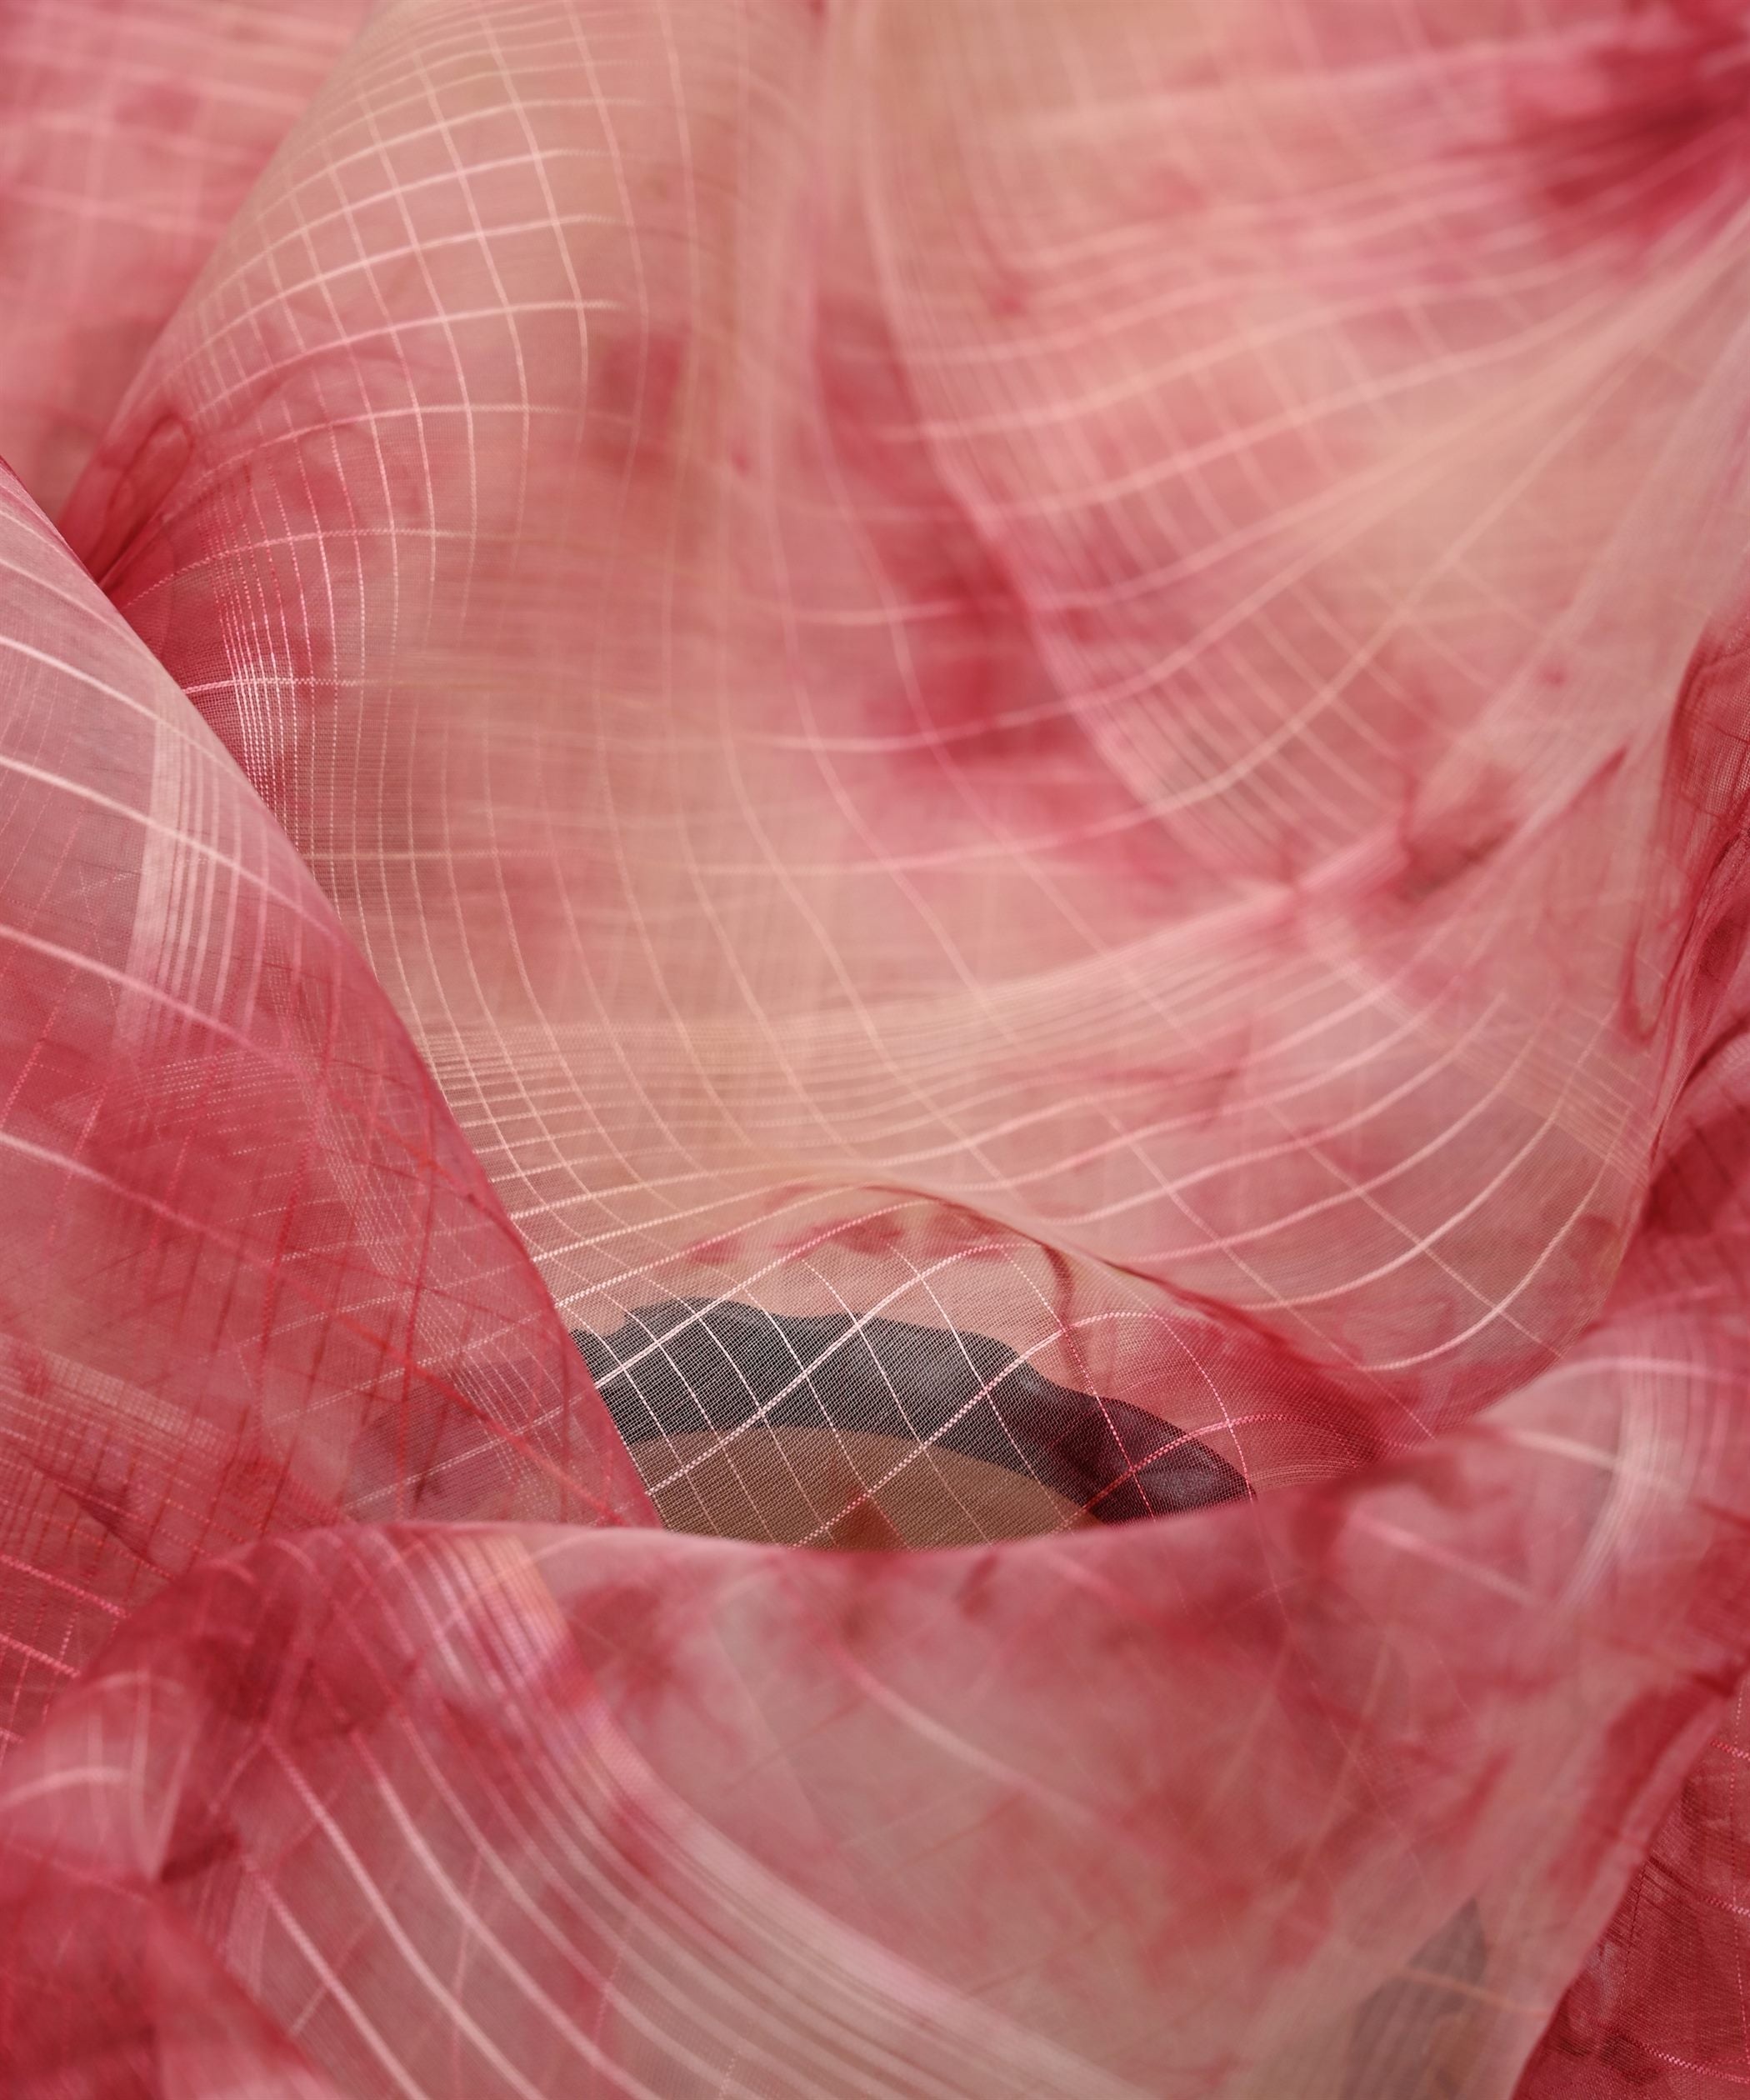 Peach Shibori Organza Fabric with Satin Border